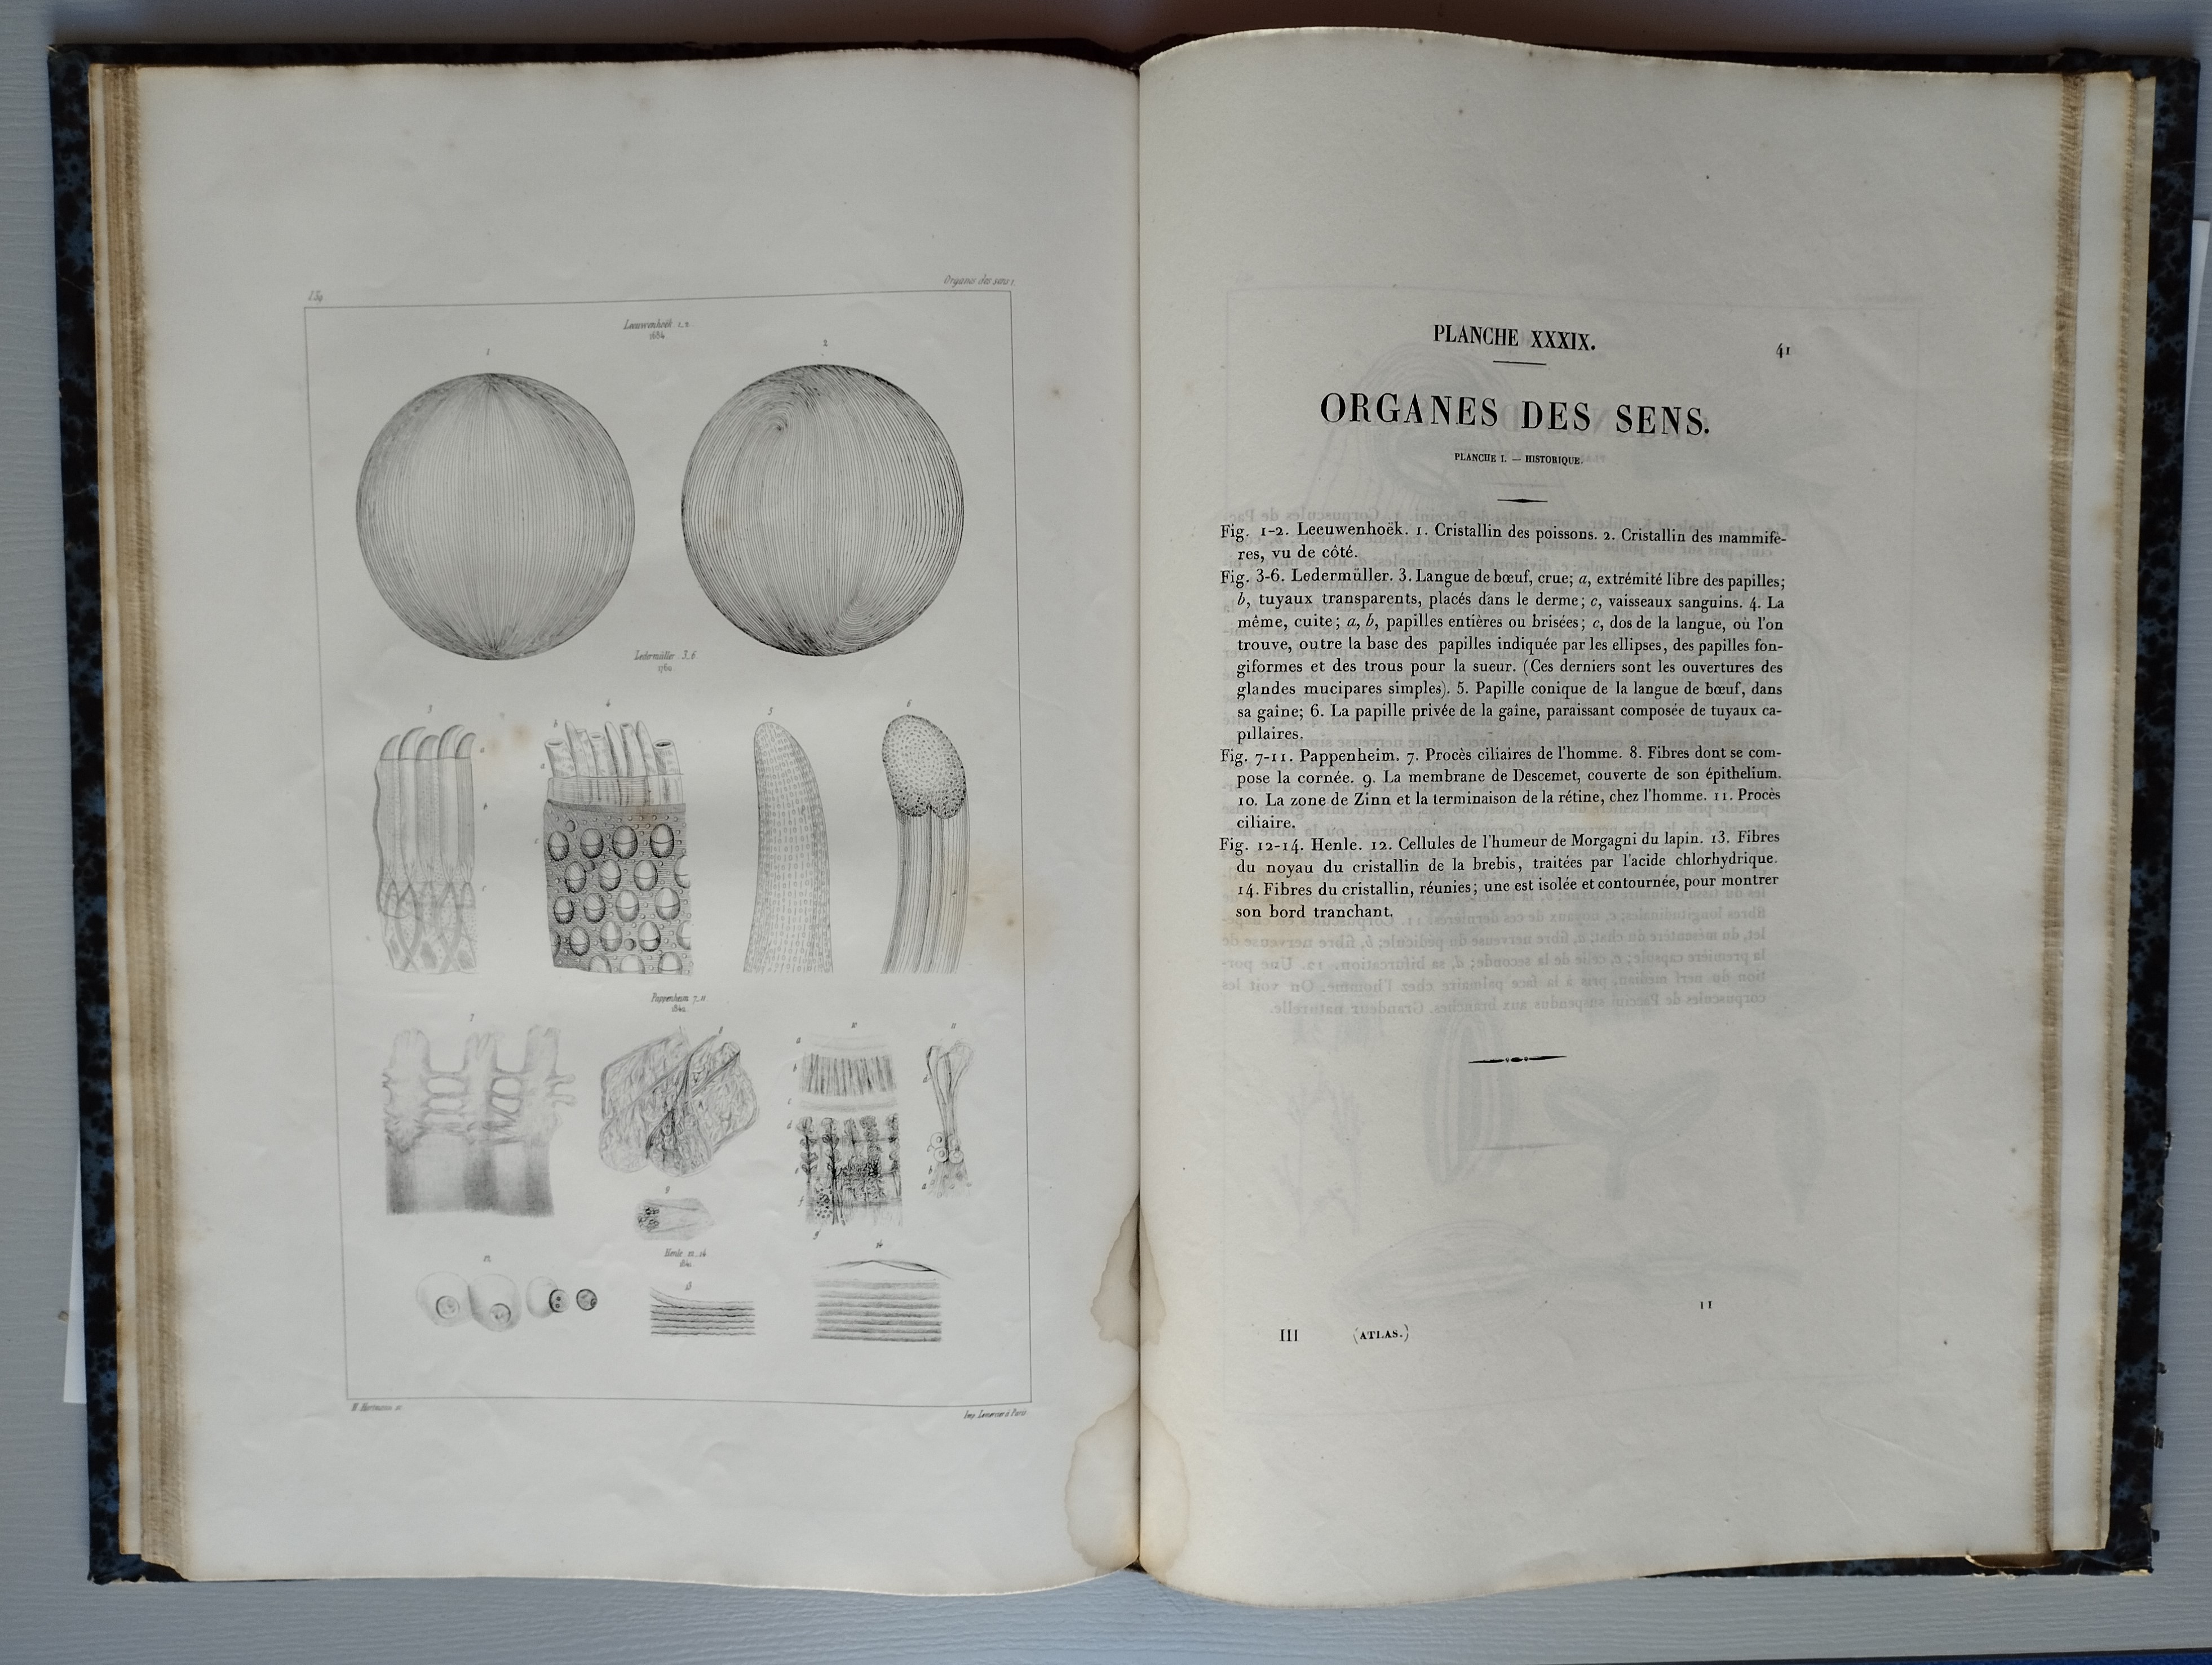 L' Anatomie microscopique. Tome premier, Histologie ou Recherches sur les éléments microscopiques des tissus, des organes et des liquides... Louis Mandl, 1838-1857